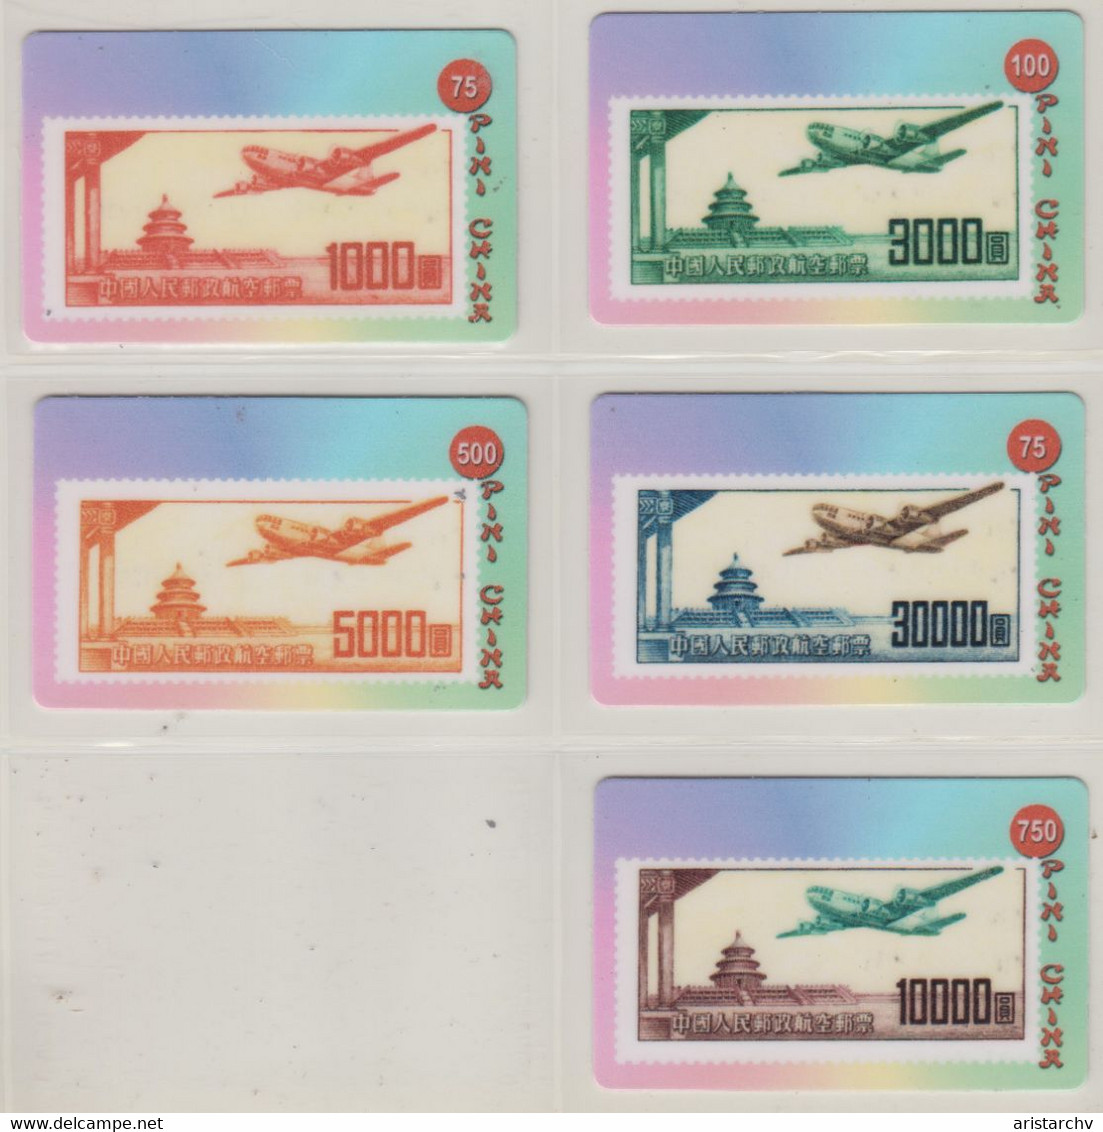 CHINA AVIATION PLANE STAMPS ON PHONE CARDS SET OF 5 CARDS - Briefmarken & Münzen